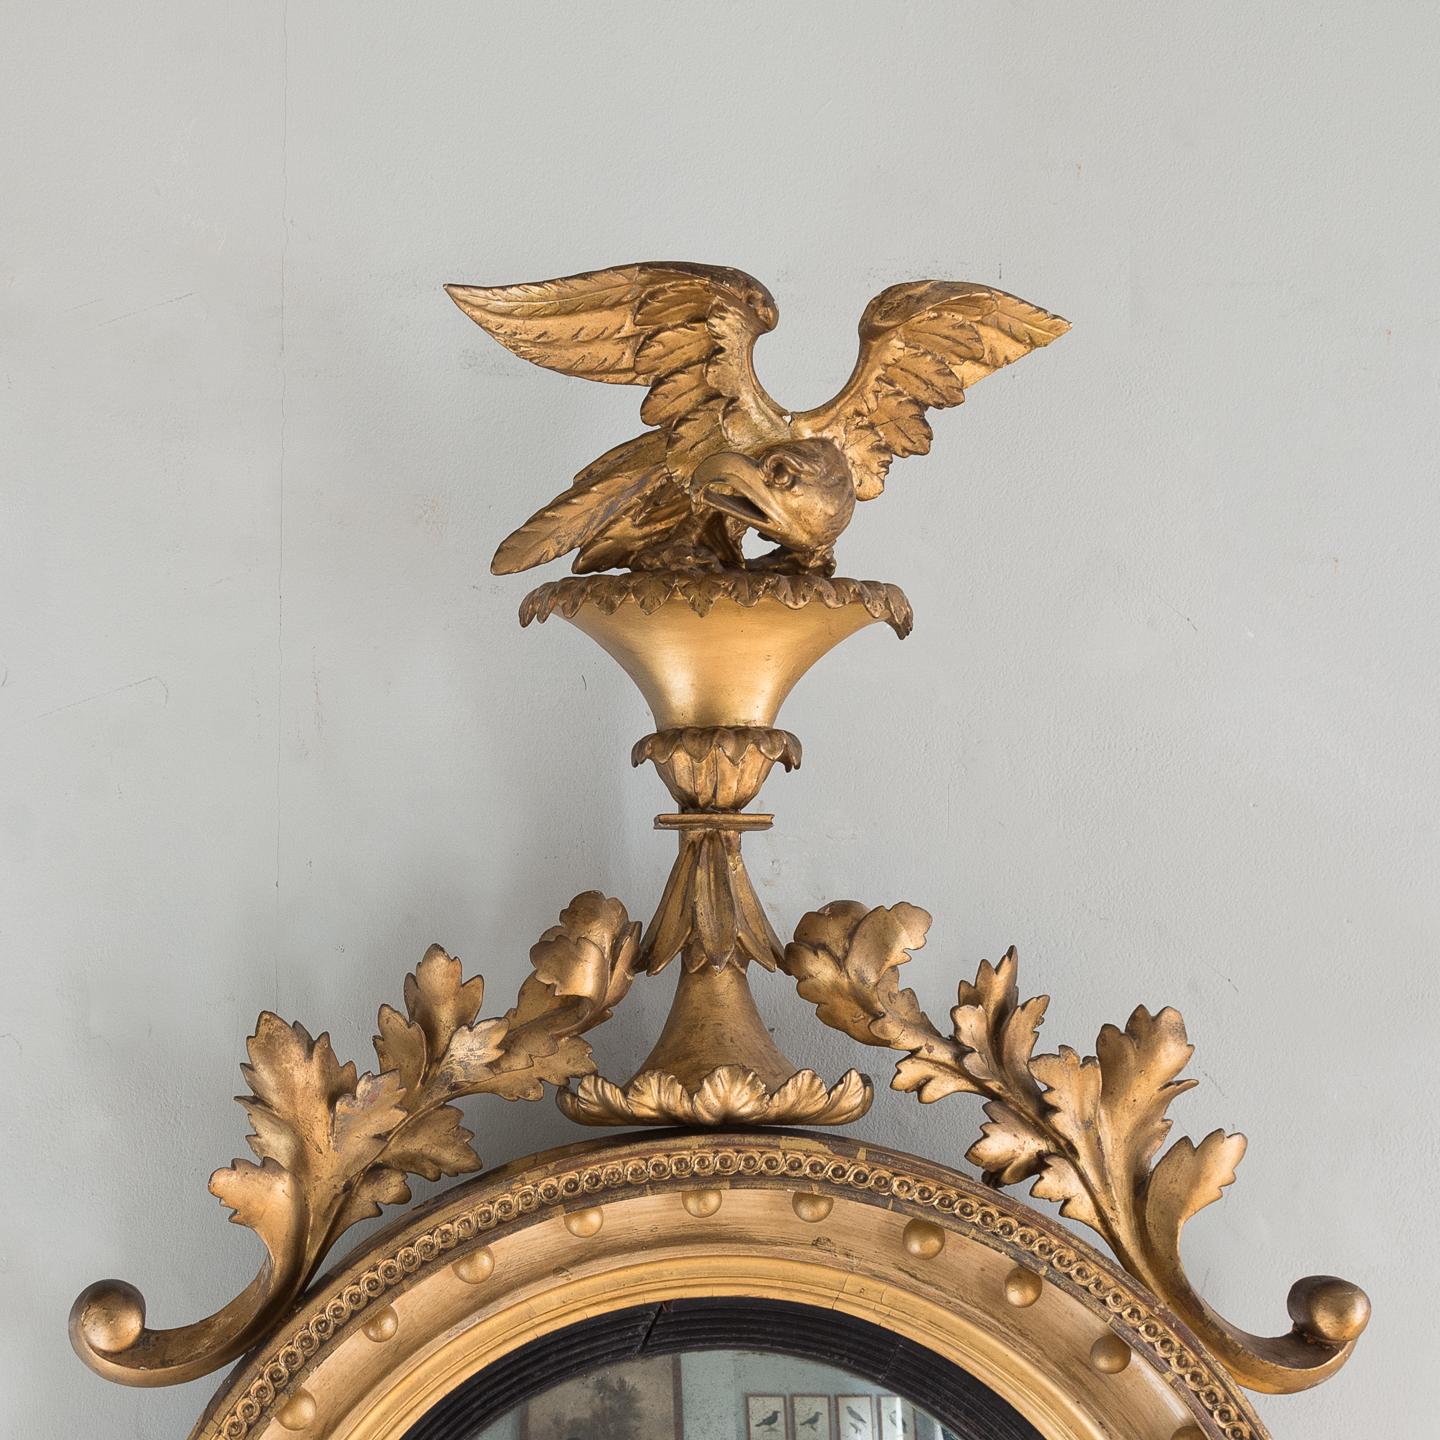 Miroir convexe en bois doré Regency, anglais, vers 1825, avec un aigle bien sculpté sur un affleurement rocheux au-dessus de feuilles et de rinceaux entrelacés menant à un cadre circulaire détaillé comprenant un décor de boules en bois doré, un